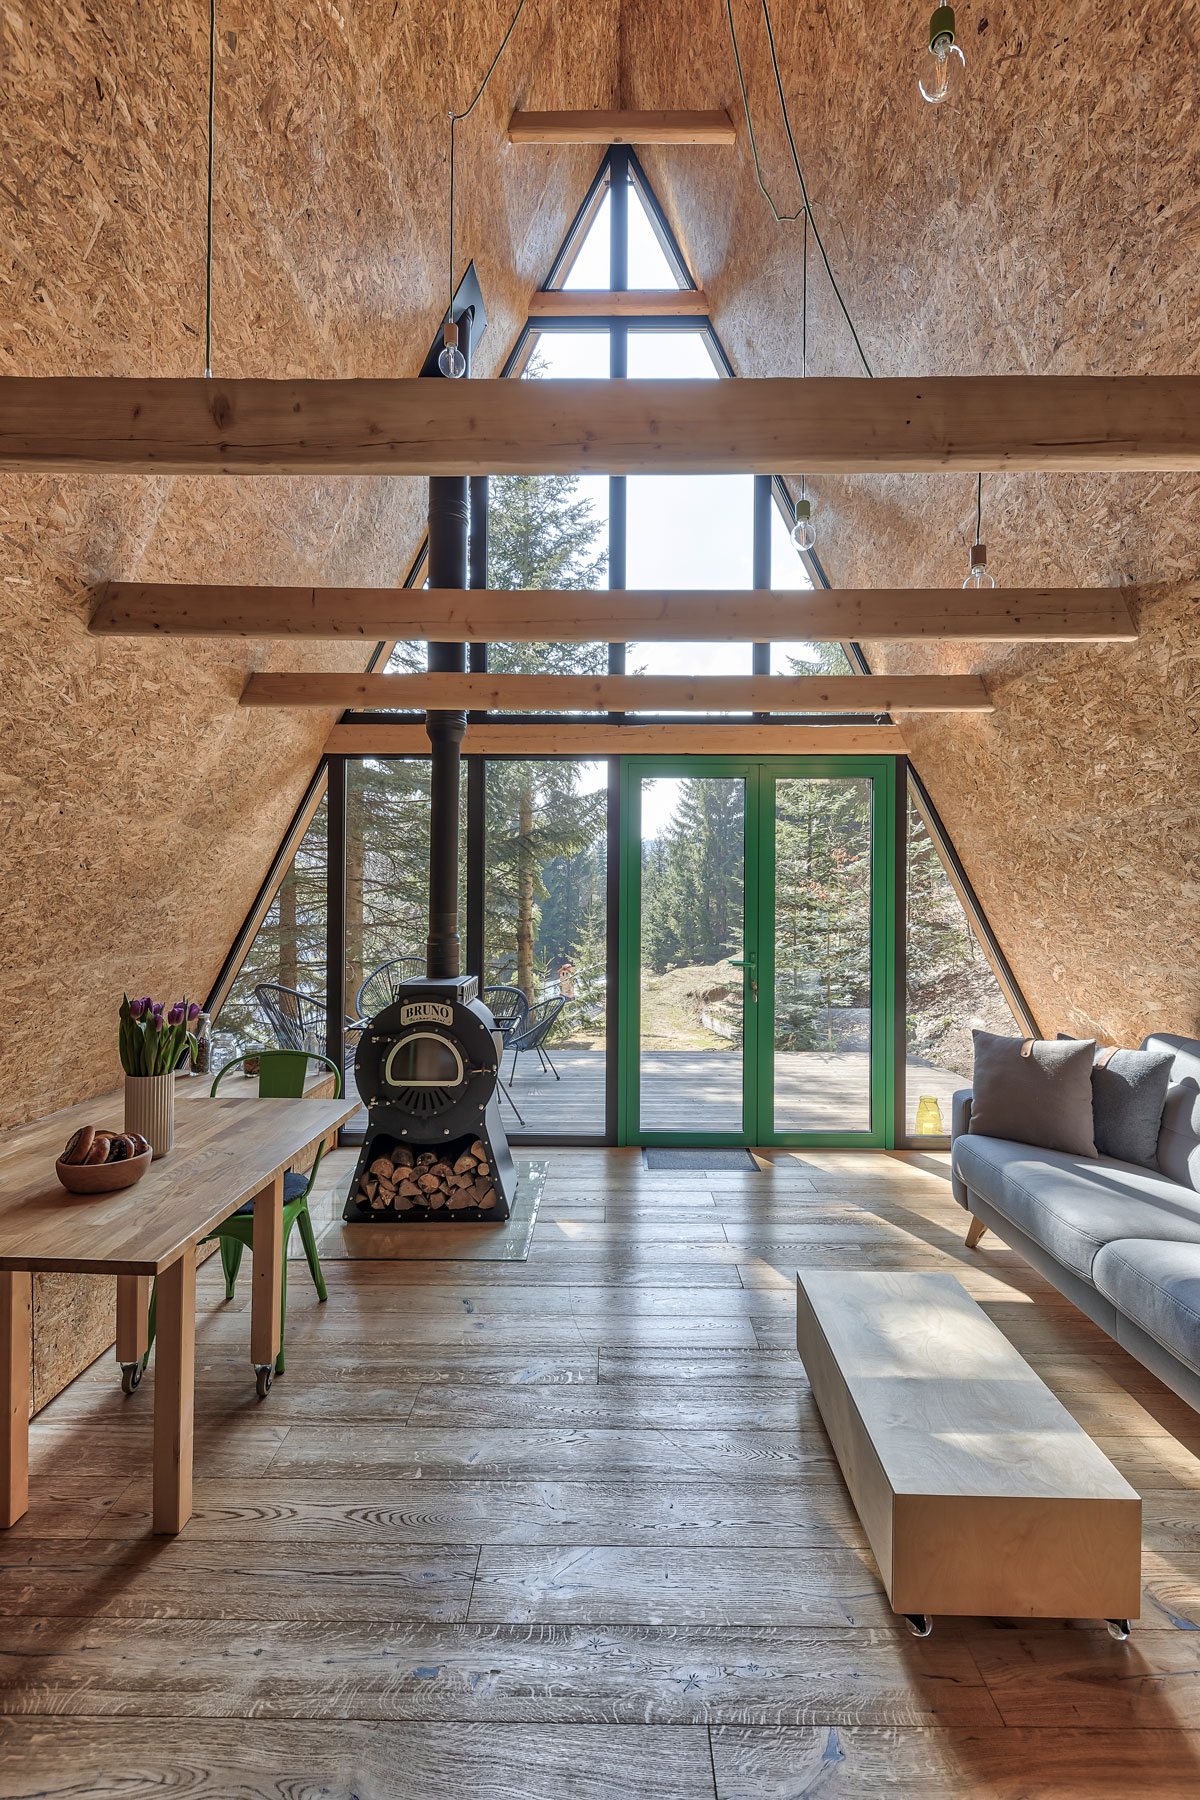 pohľad do interiéru typickej horskej chaty s áčkovou strechou, ktorá je z jednej časti presklená s výhľadom do lesa a vstupom na terasu, v interiéri je jednoduchá sivá sedačka, minimalistický stolík a piecka